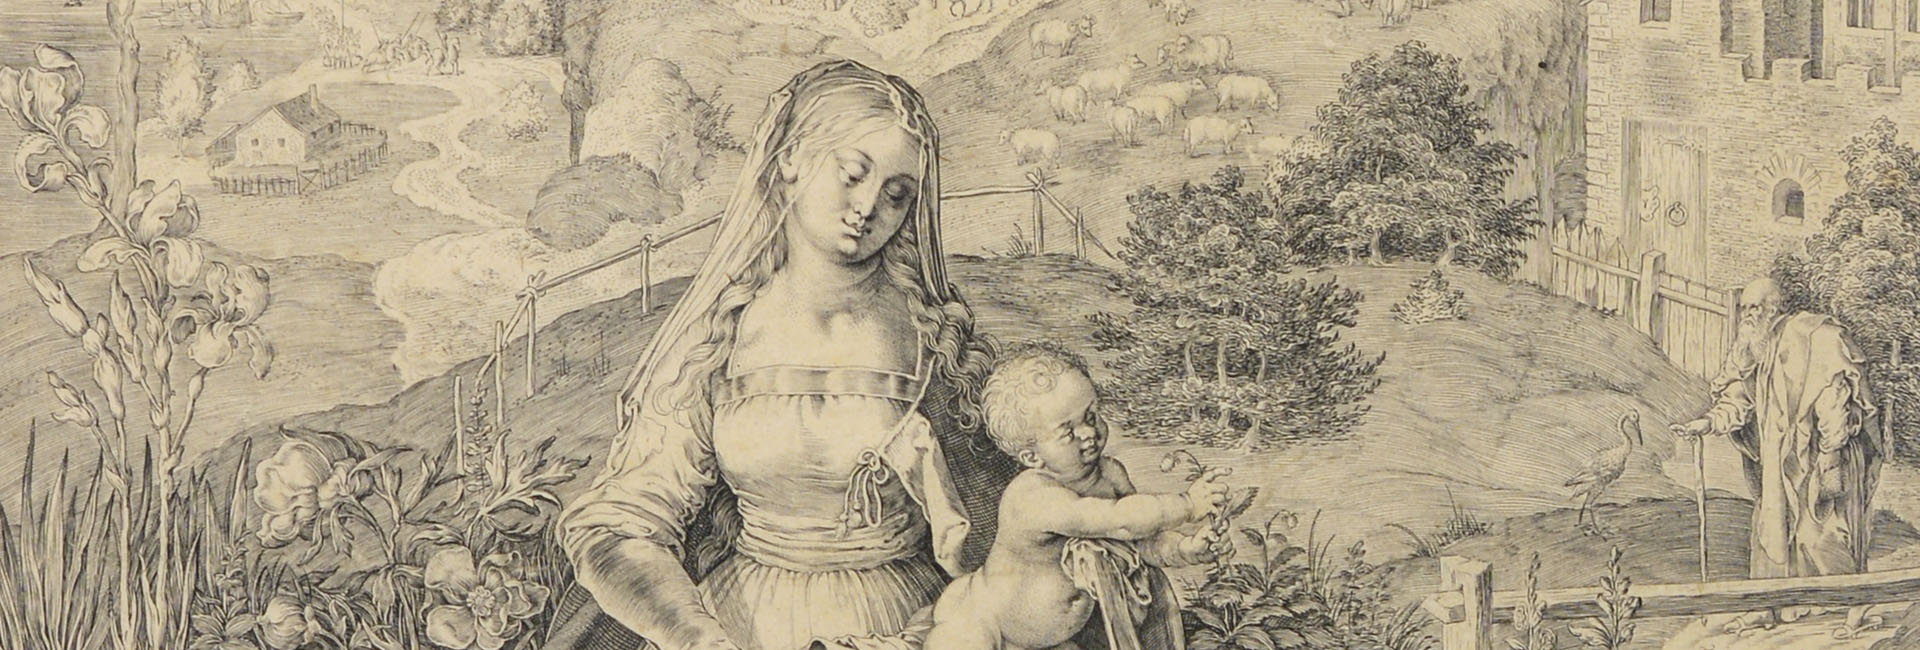 MADONNA WITH CHILD IN A LANDSCAPE [Aegidius Sadeler]